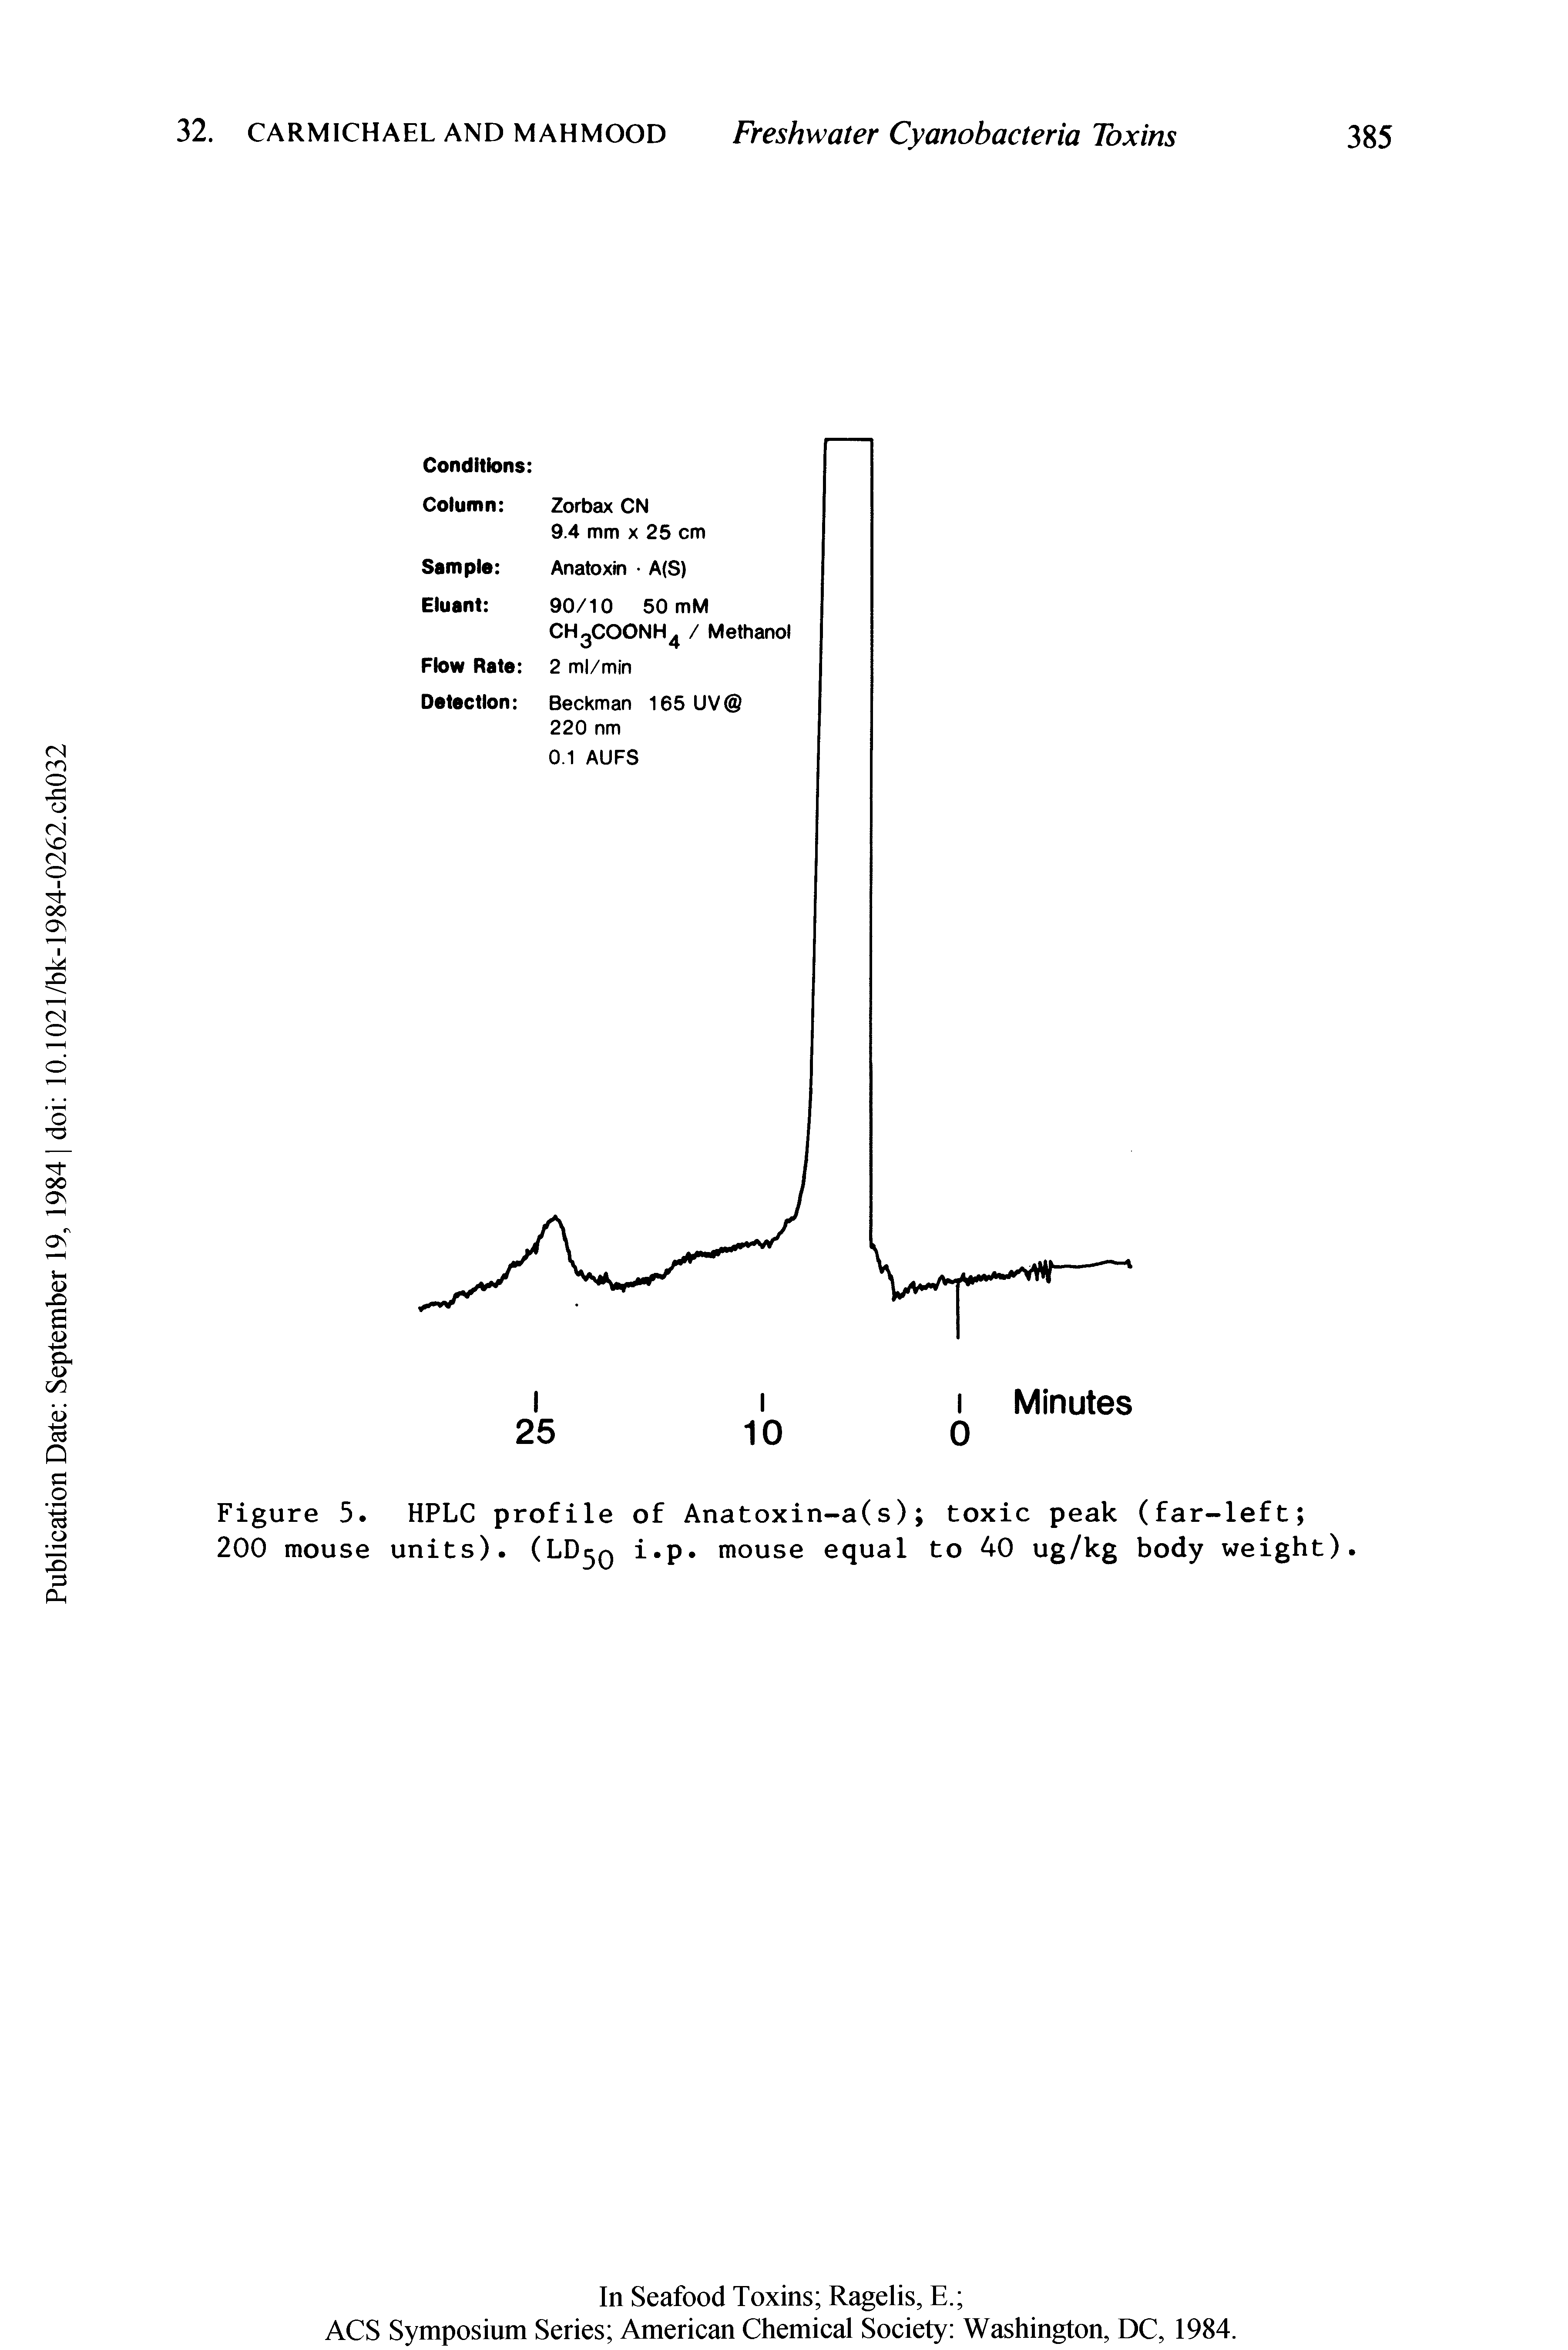 Figure 5. HPLC profile of Anatoxin-a(s) toxic peak (far-left ...